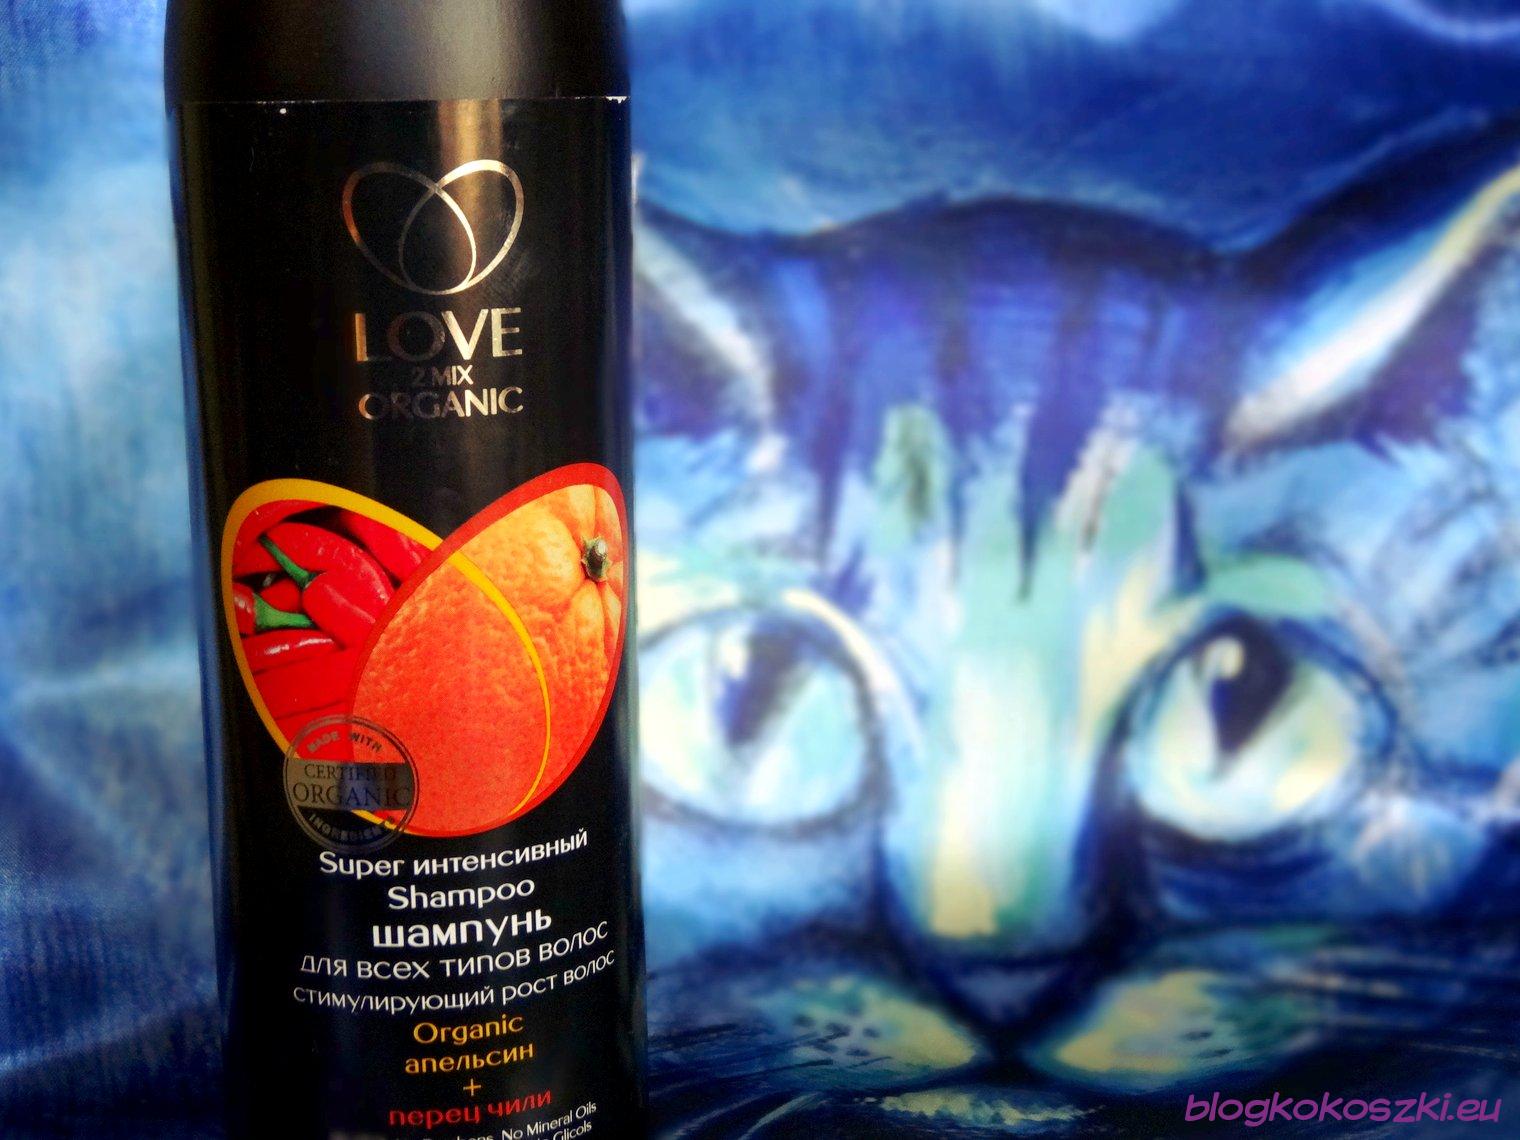 love2mix organic szampon z ekstraktem z papryczki chili